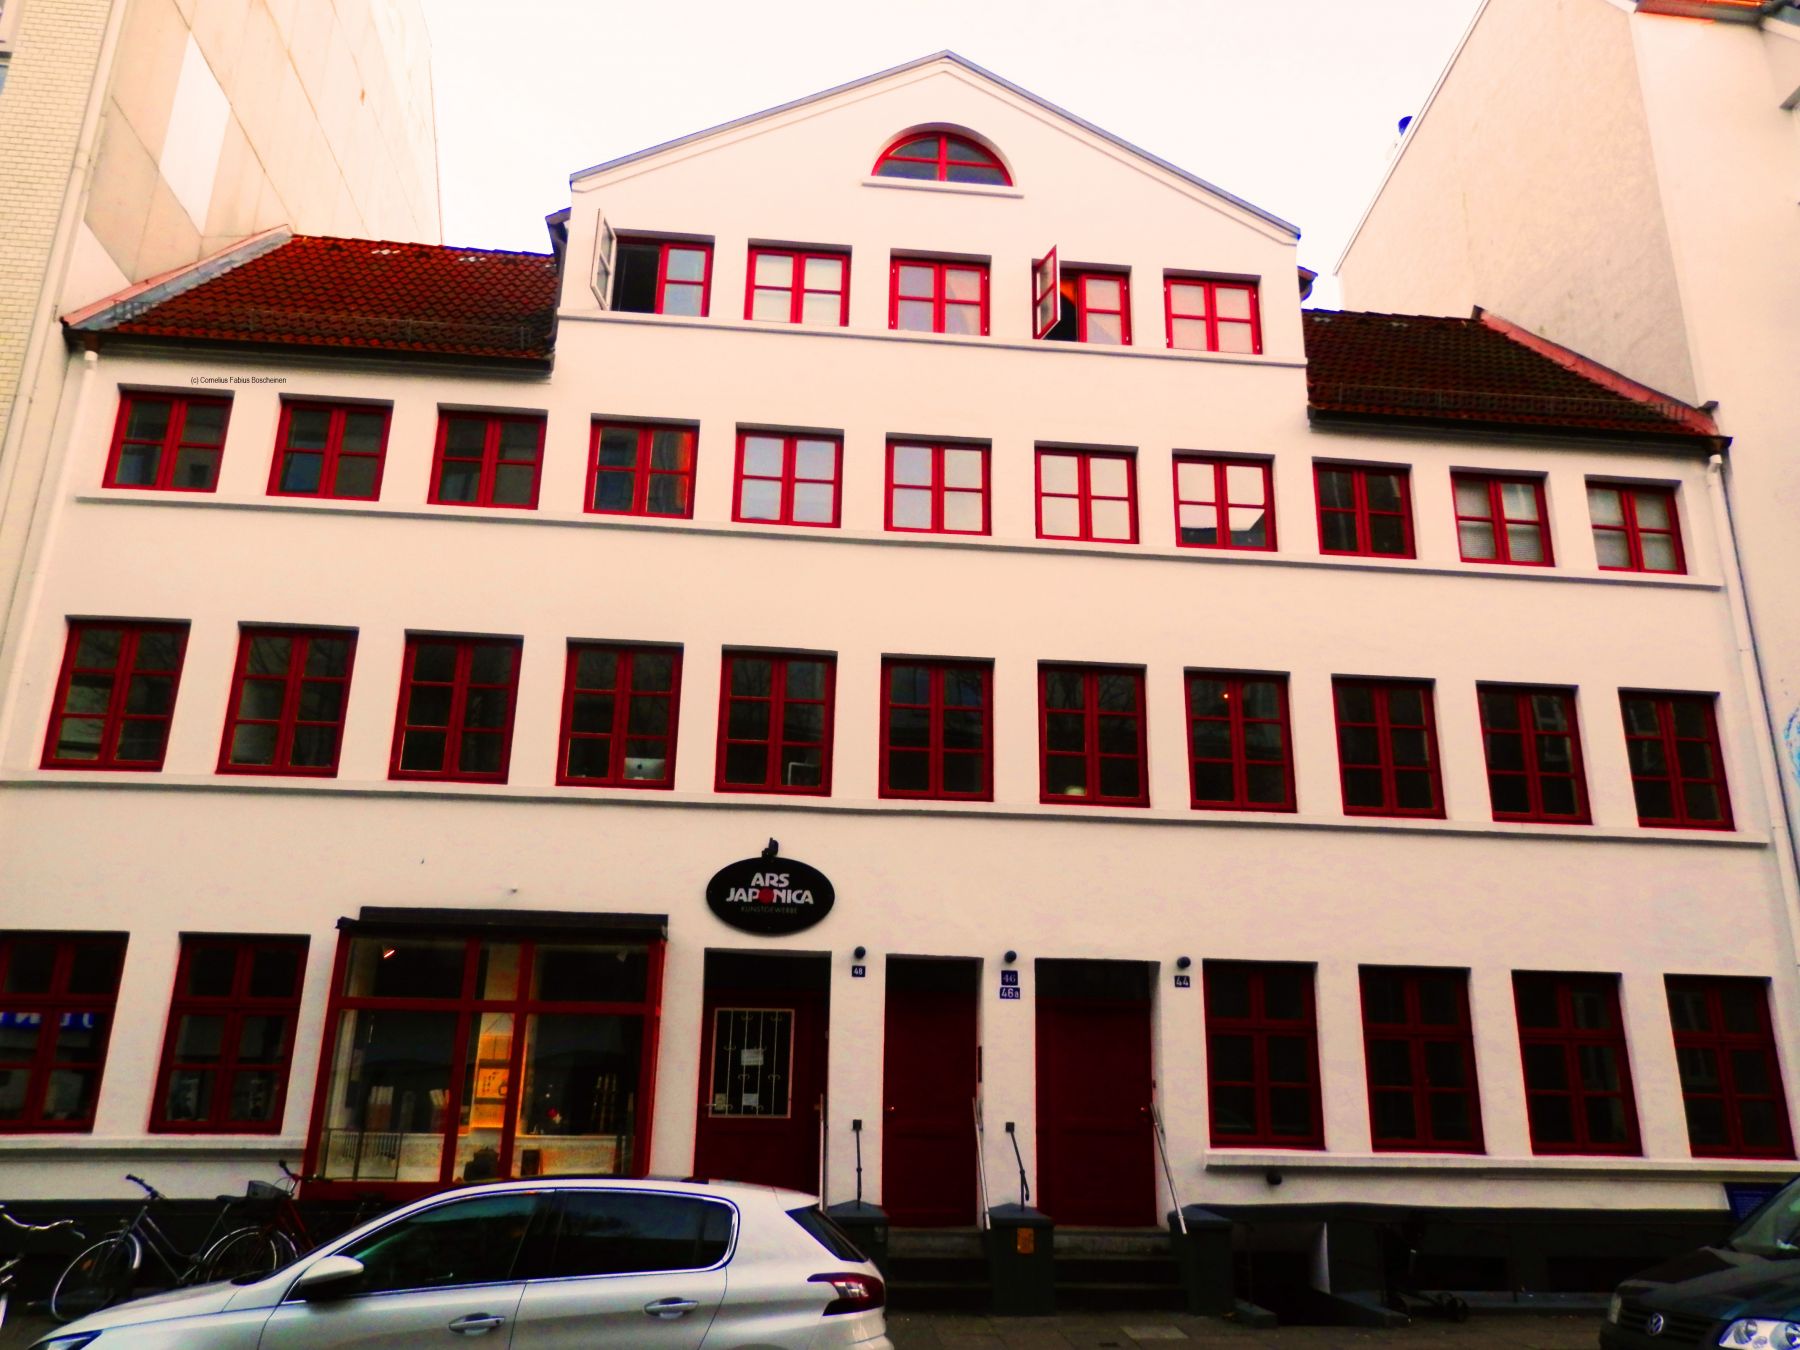 historisches Wohnhaus in St. Pauli bei Hamburg.